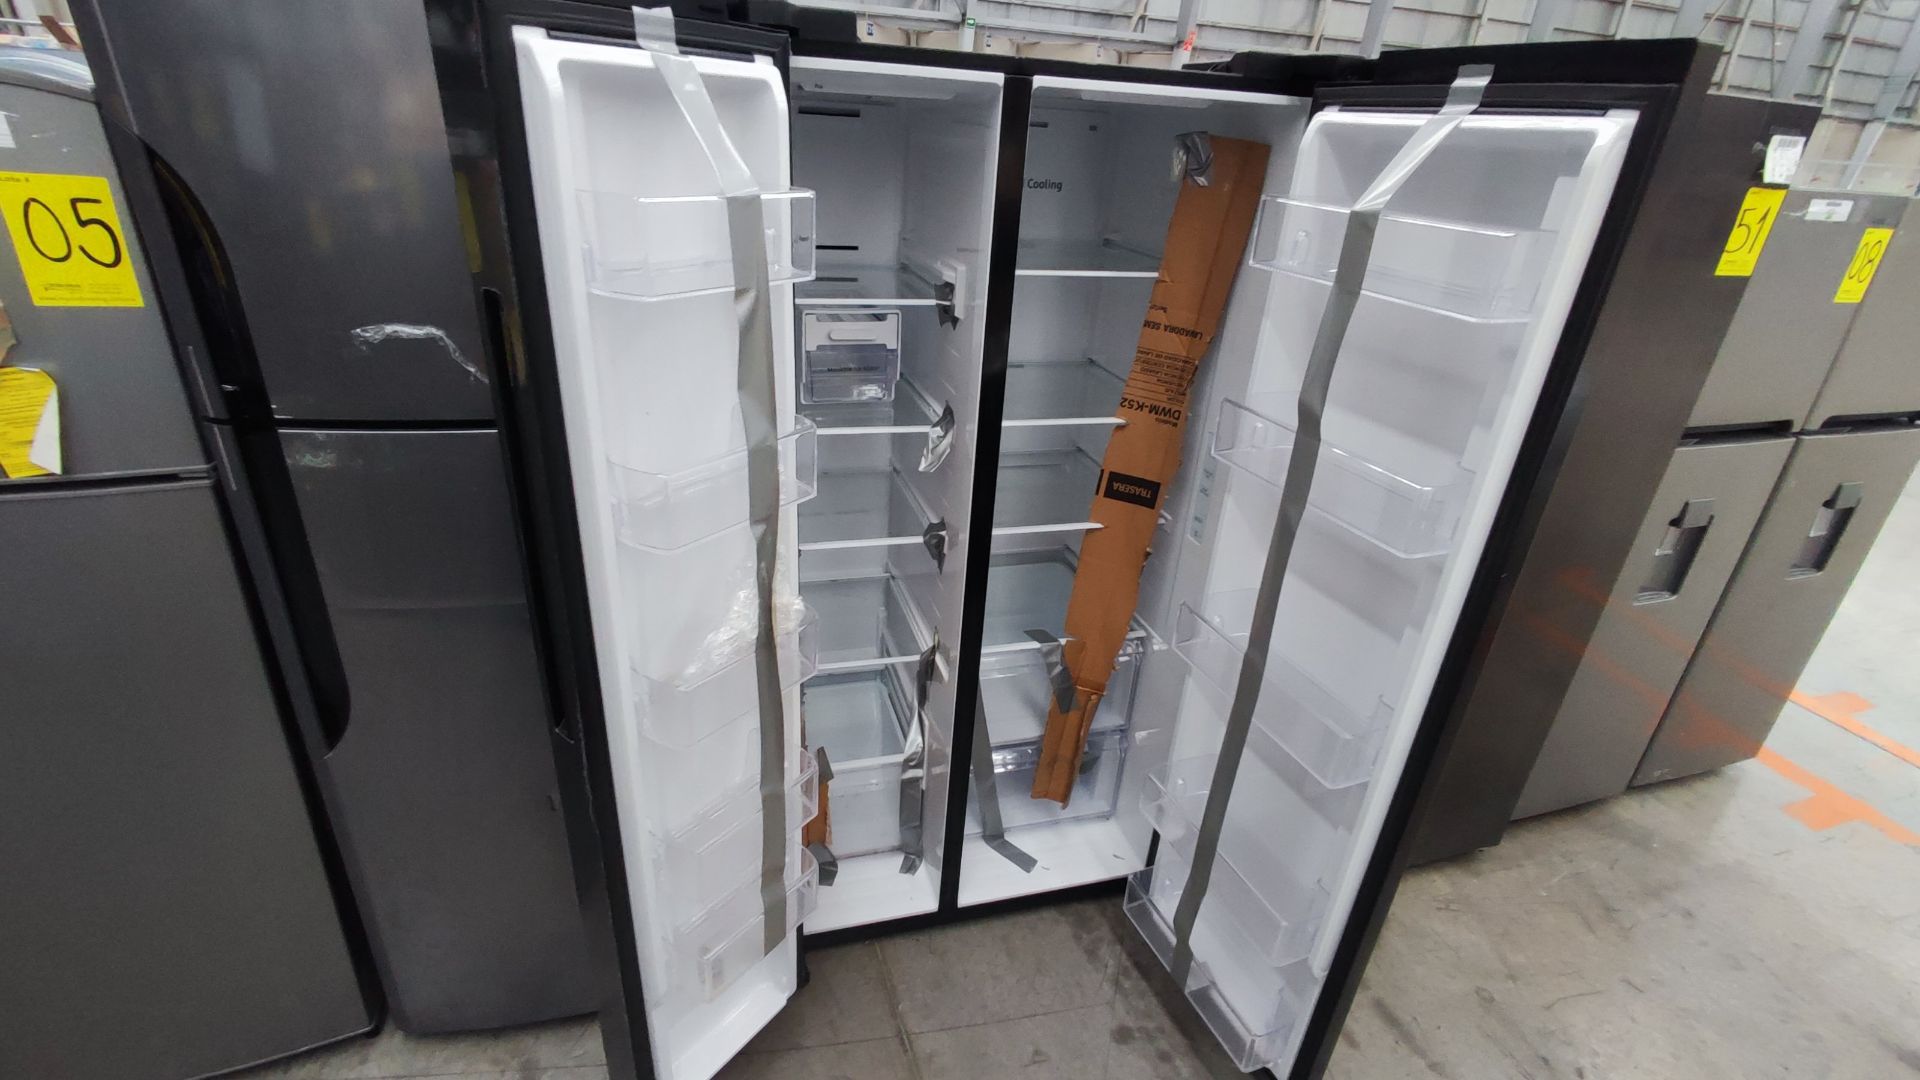 1 Refrigerador Marca Samsung, Modelo RS28T5B00B1, Serie 0B2V4BBT300506M, Color Gris Detalles Estéti - Image 4 of 11